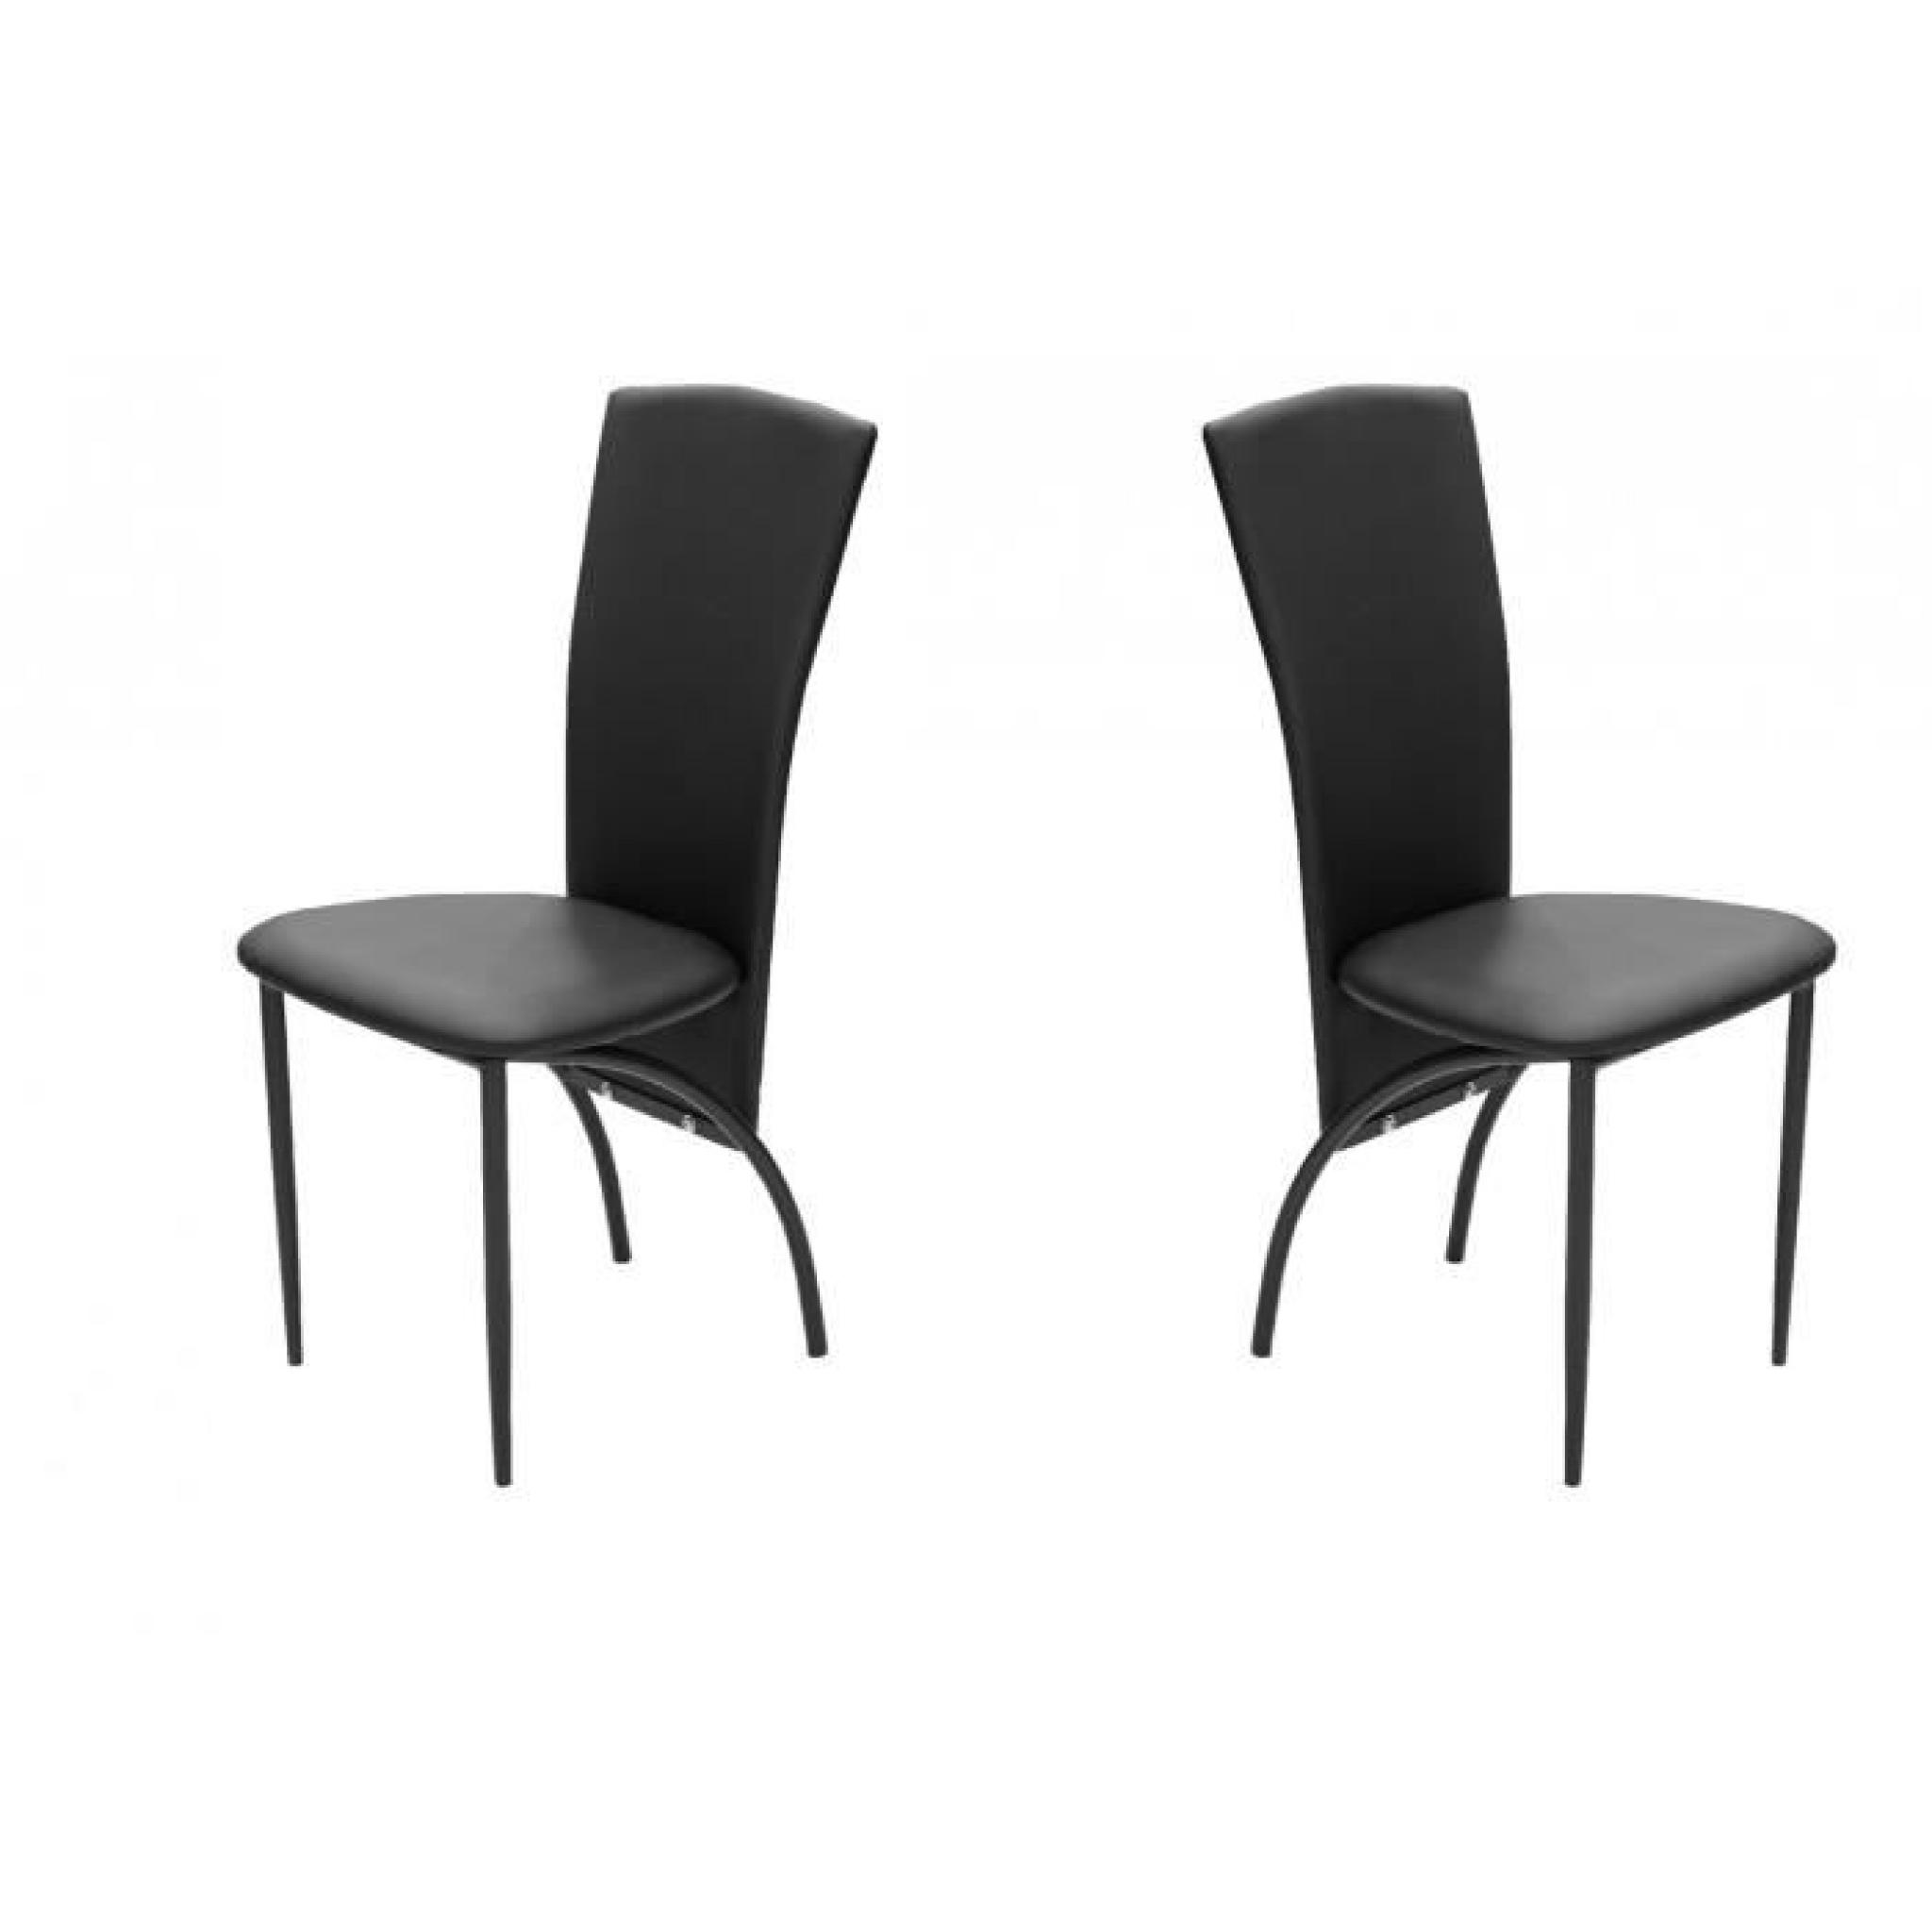 Dimensions : L45 P43 H95 Profondeur d'assise : 42 cm Caractéristiques : Revêtement de chaise en polyuréthane, pieds en métal époxy,